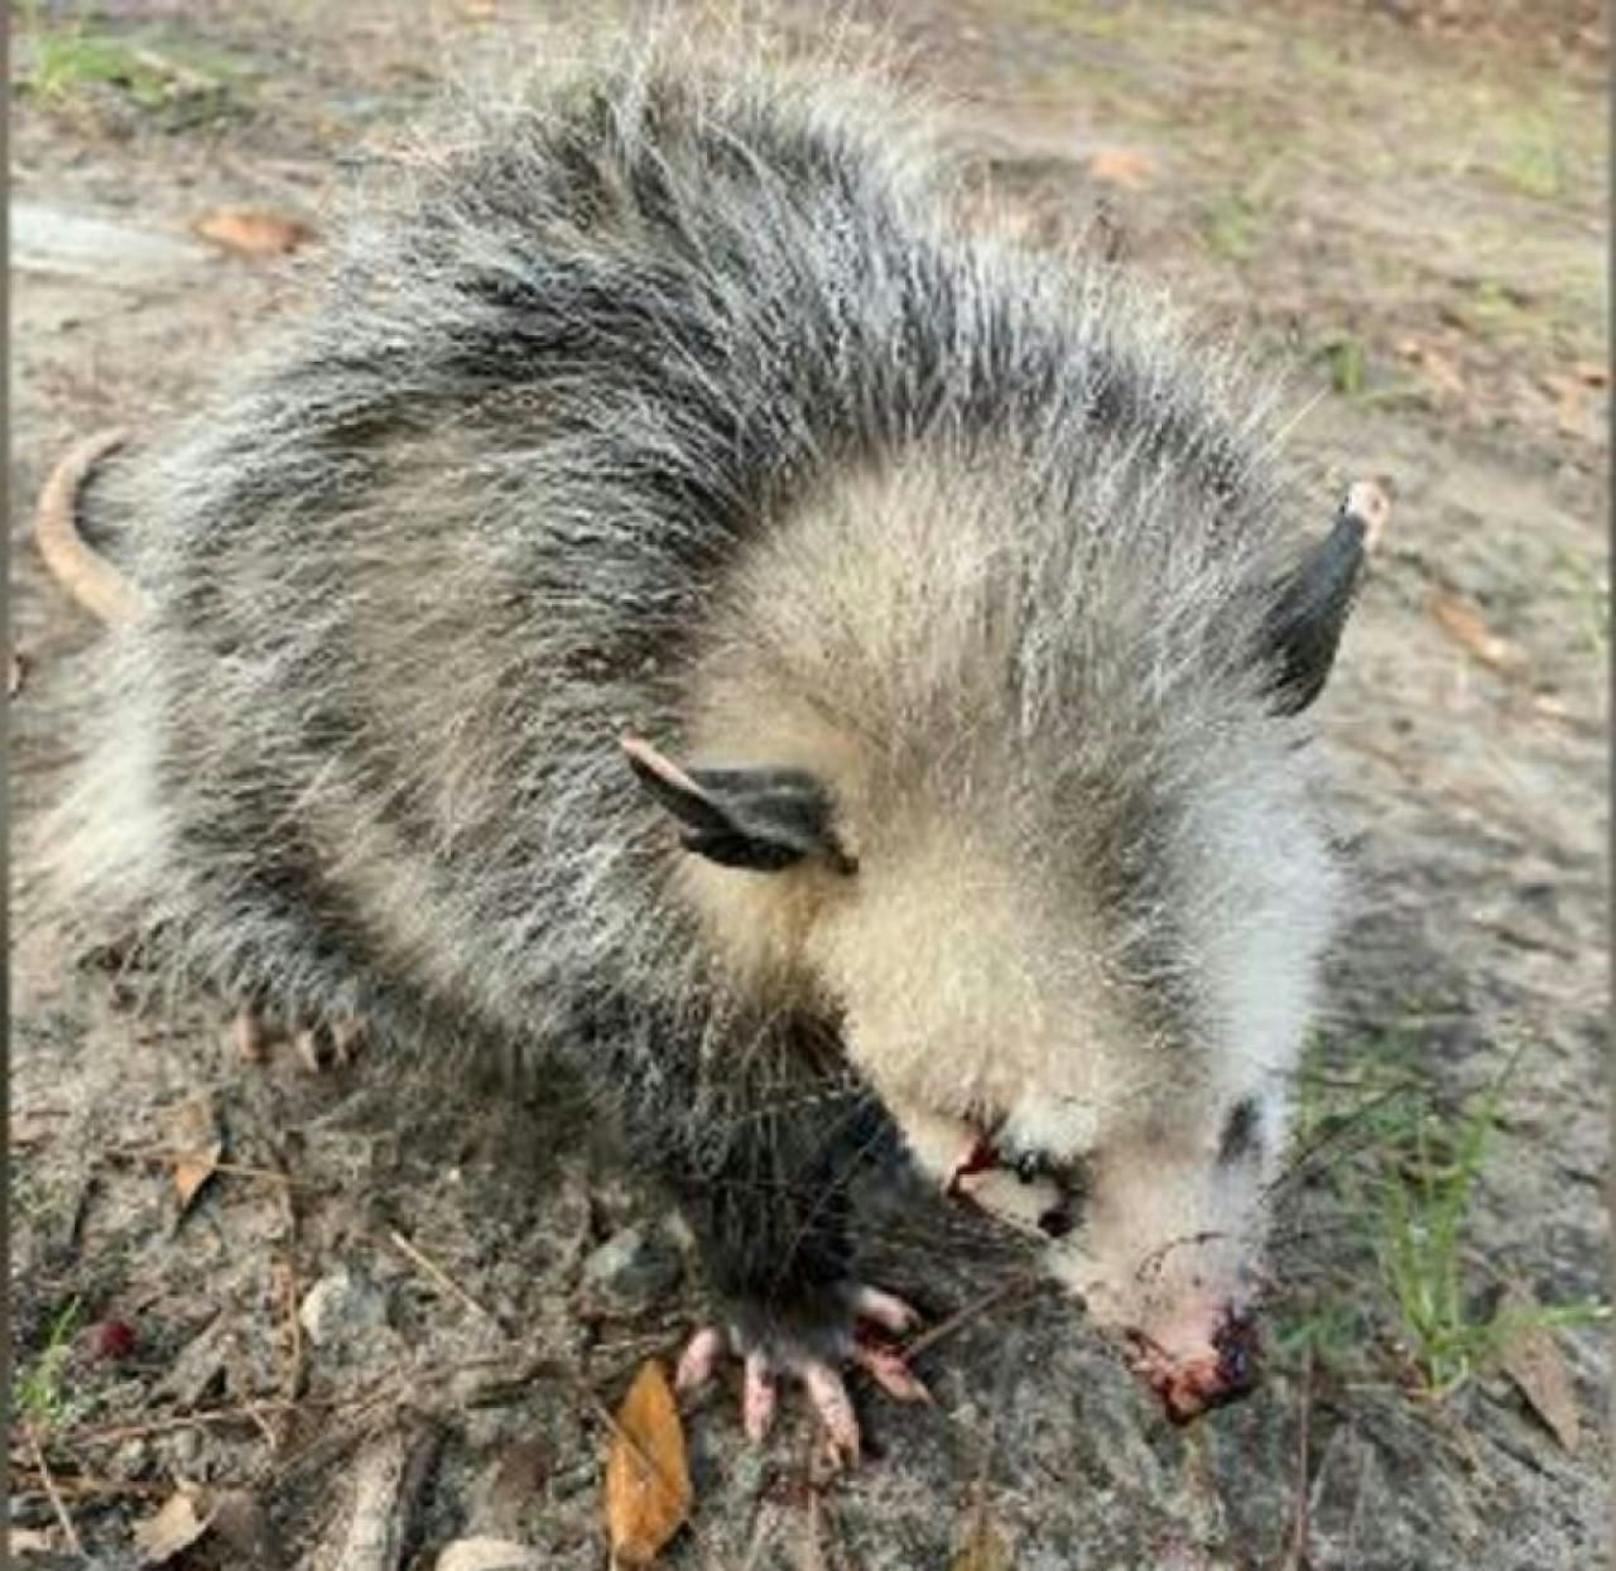 Die Opossum wurde schwerstens verletzt.